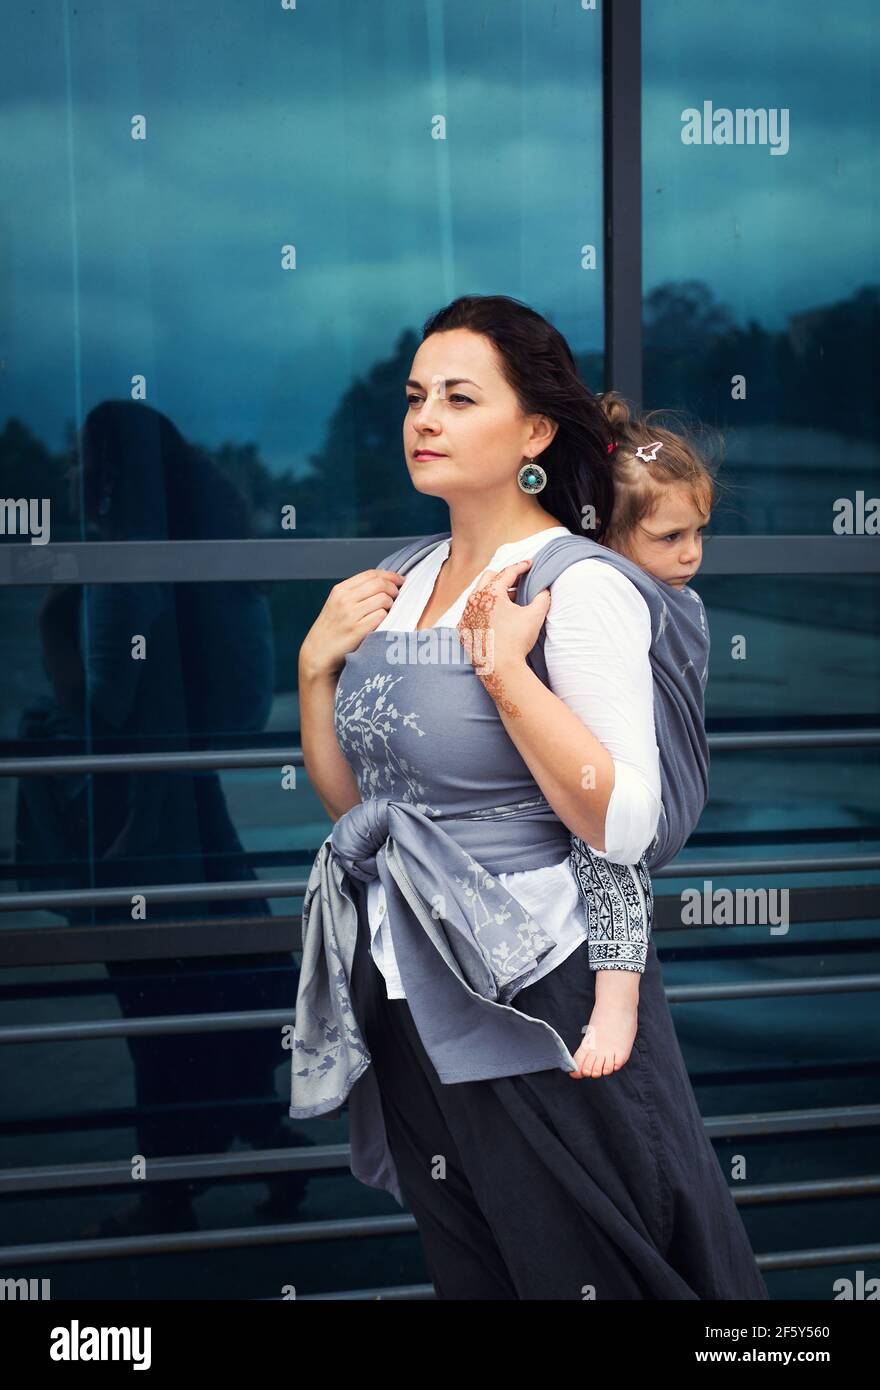 La madre y la niña se sientan en un cabestrillo gris permanezca cerca del cristal urbano Foto de stock